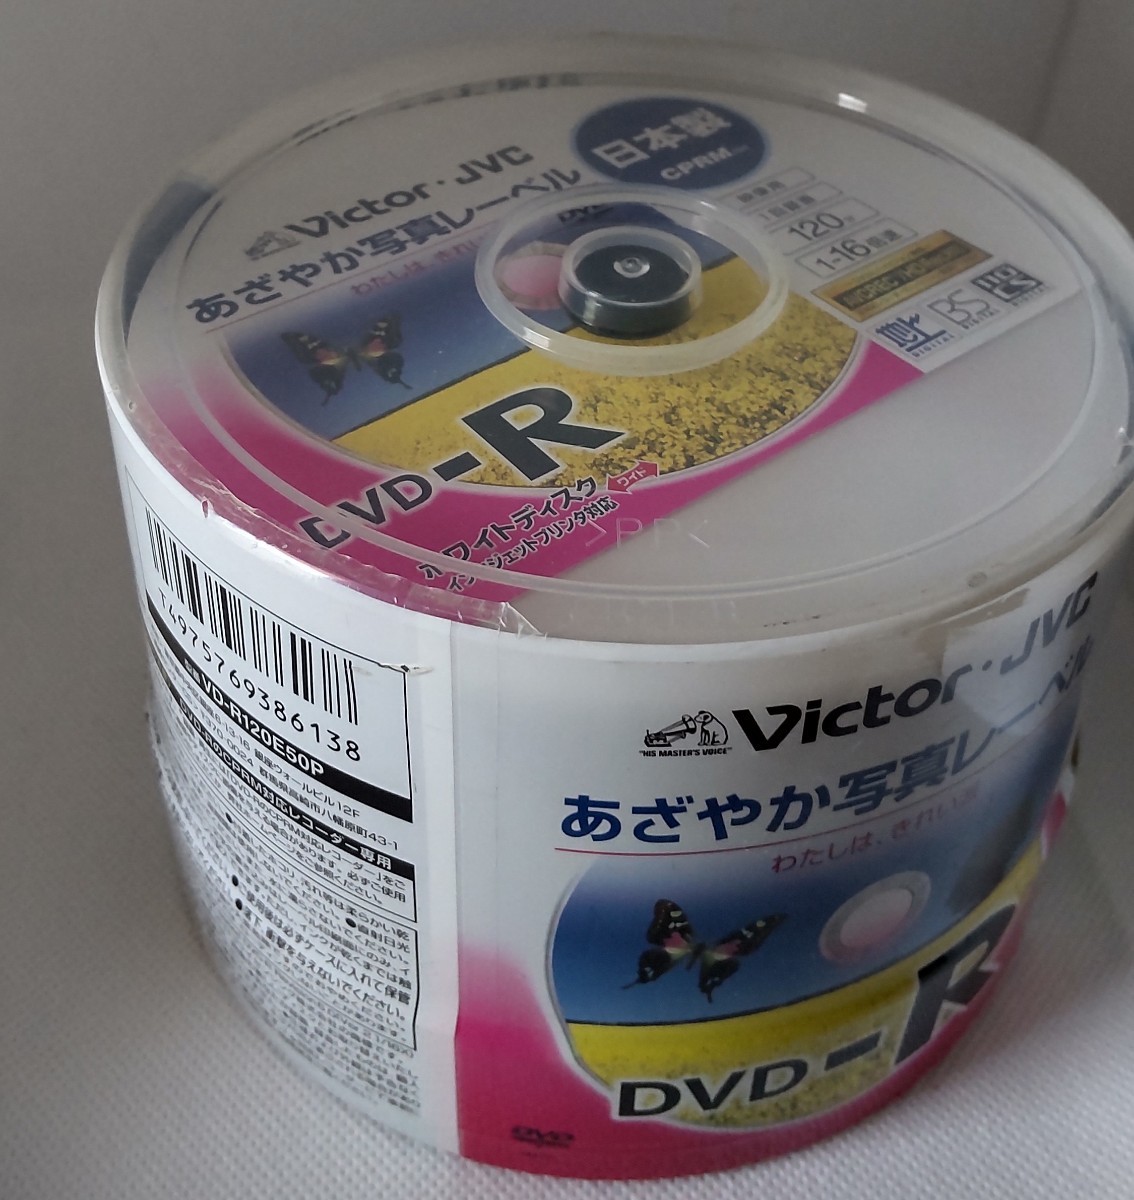 Victor録画用DVD-R 16倍速 50枚 あざやか写真レーベル VD-R120E50P （CPRM対応）_画像4